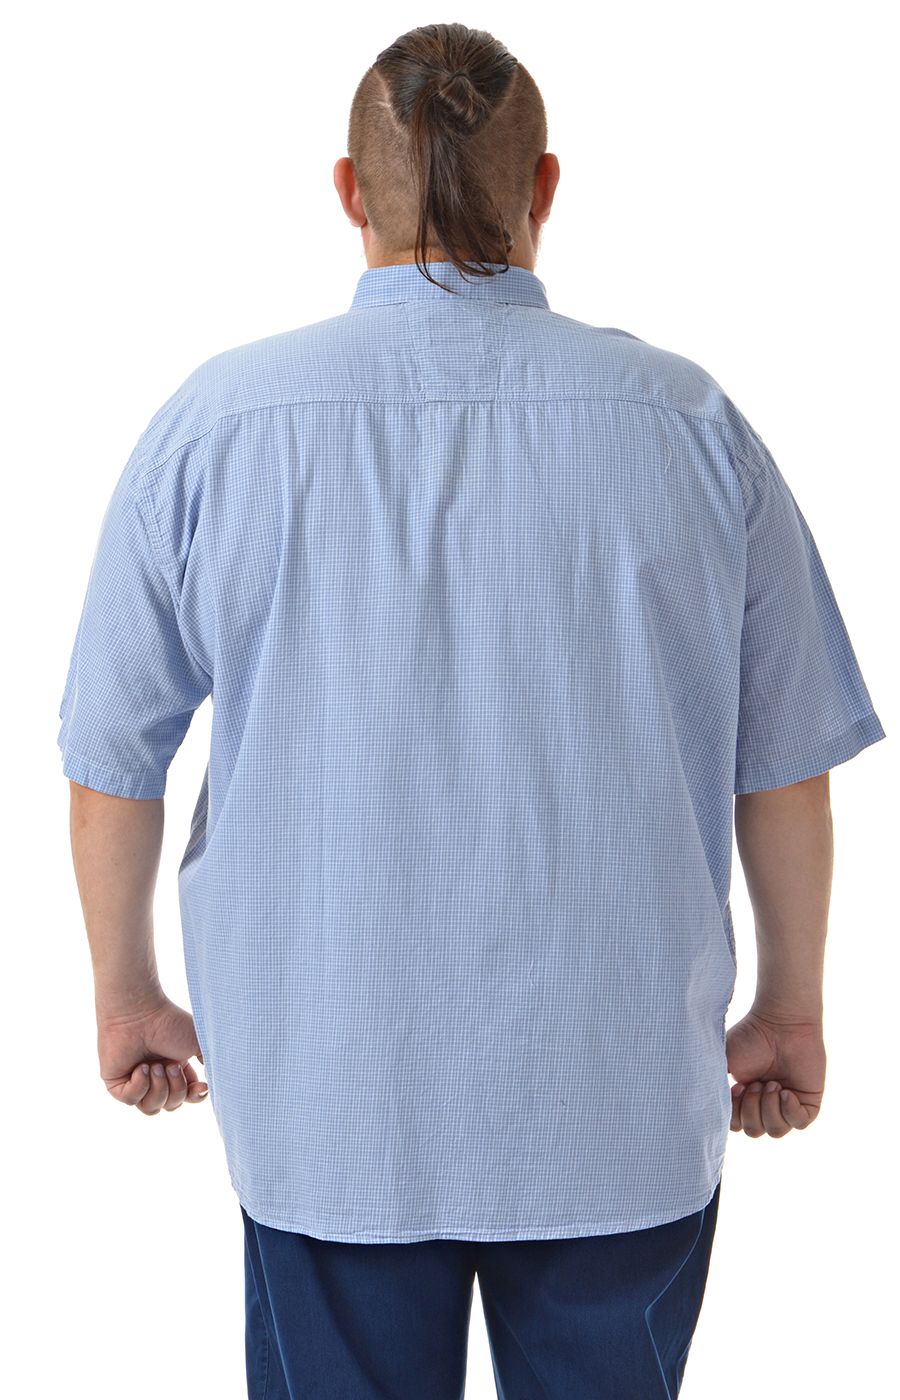 Рубашка голубая в клетку  большого размера